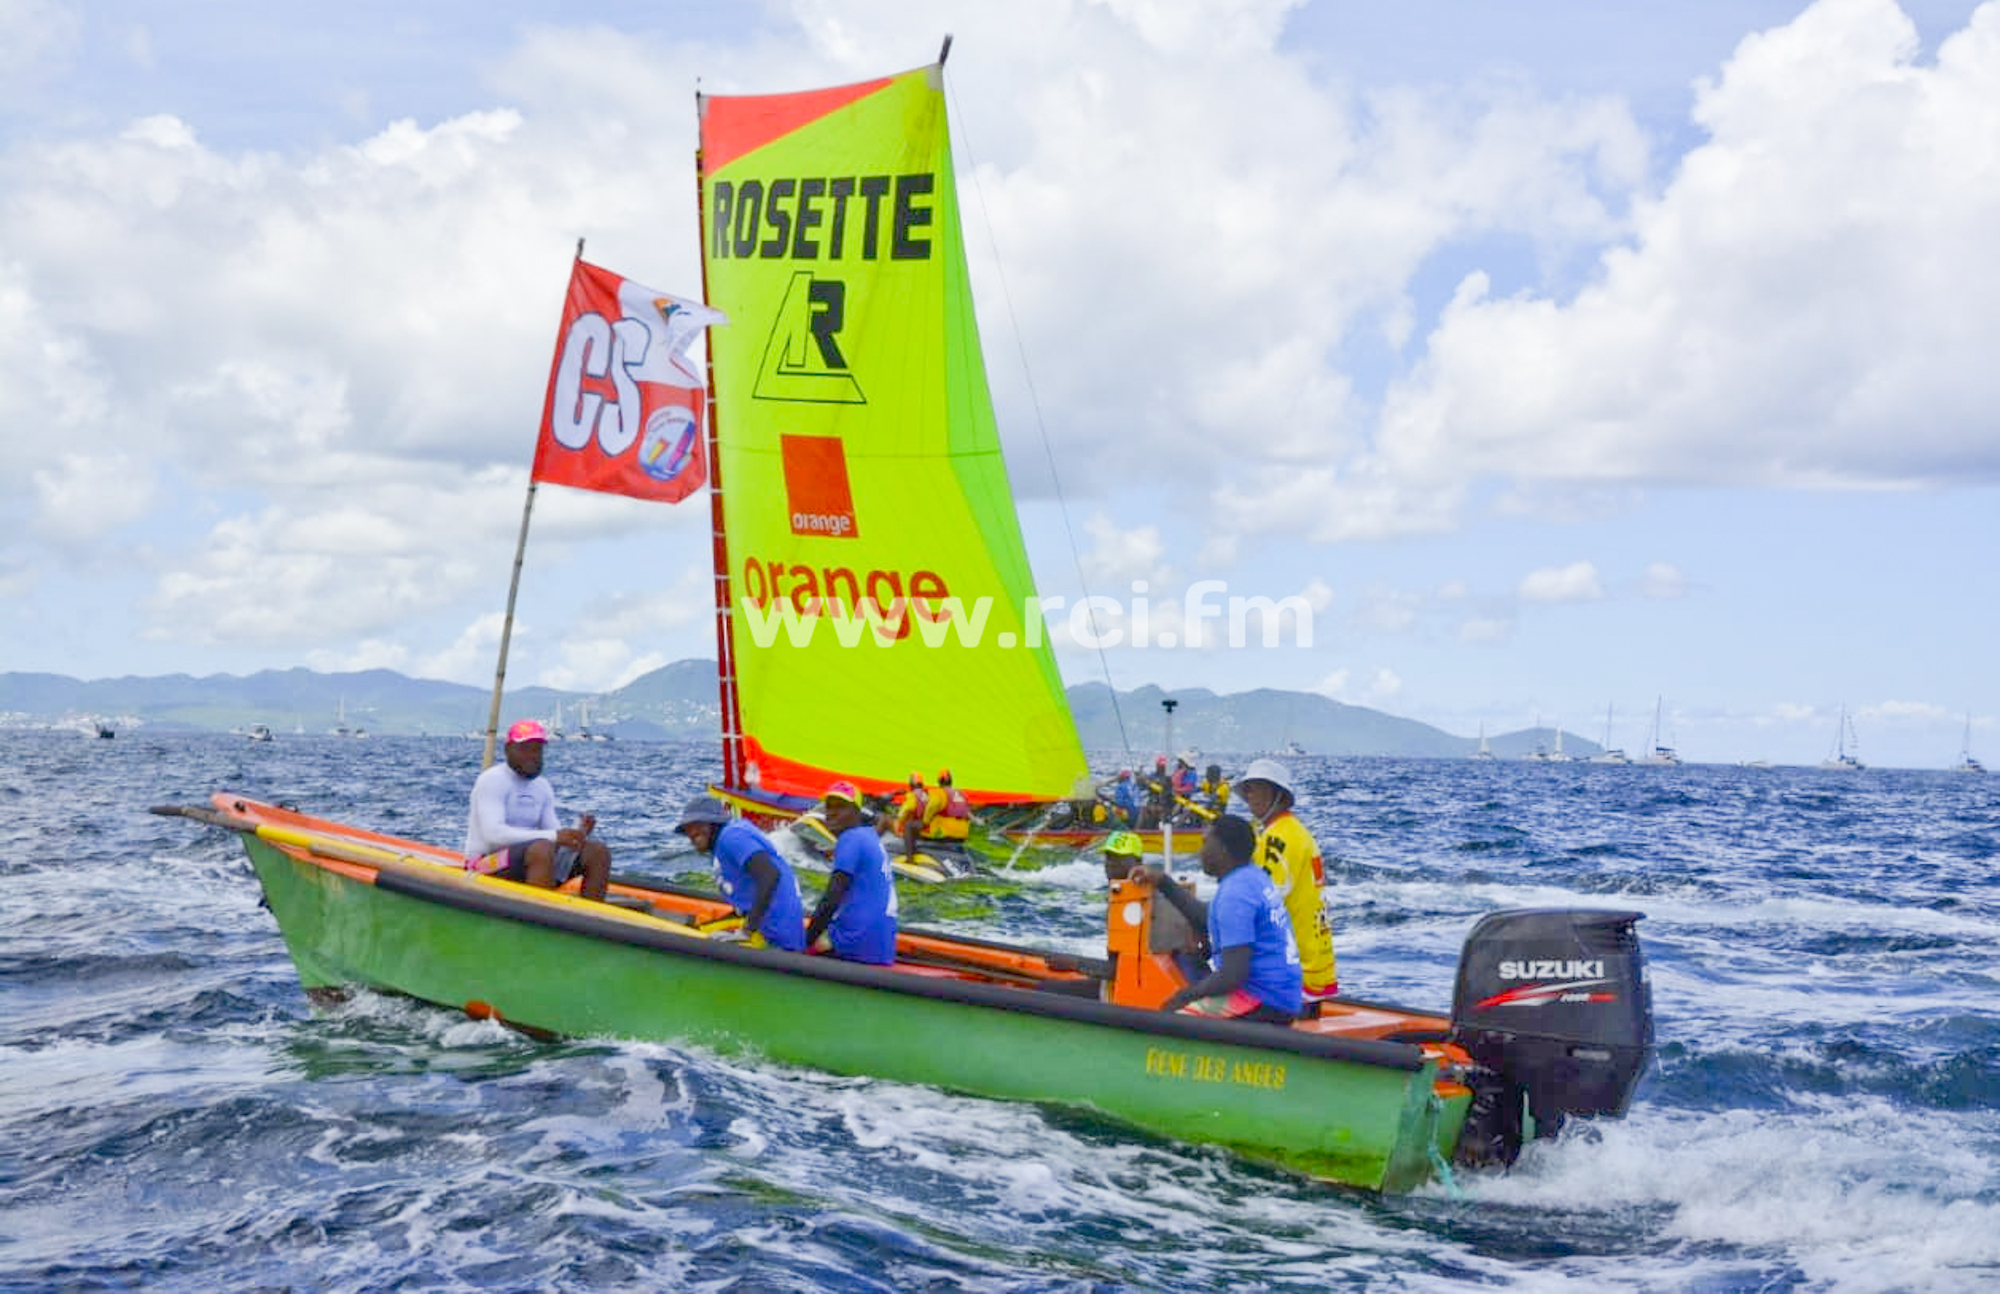     #TDY2019 : Rosette/Orange arrive à Fort-de-France en vainqueur

